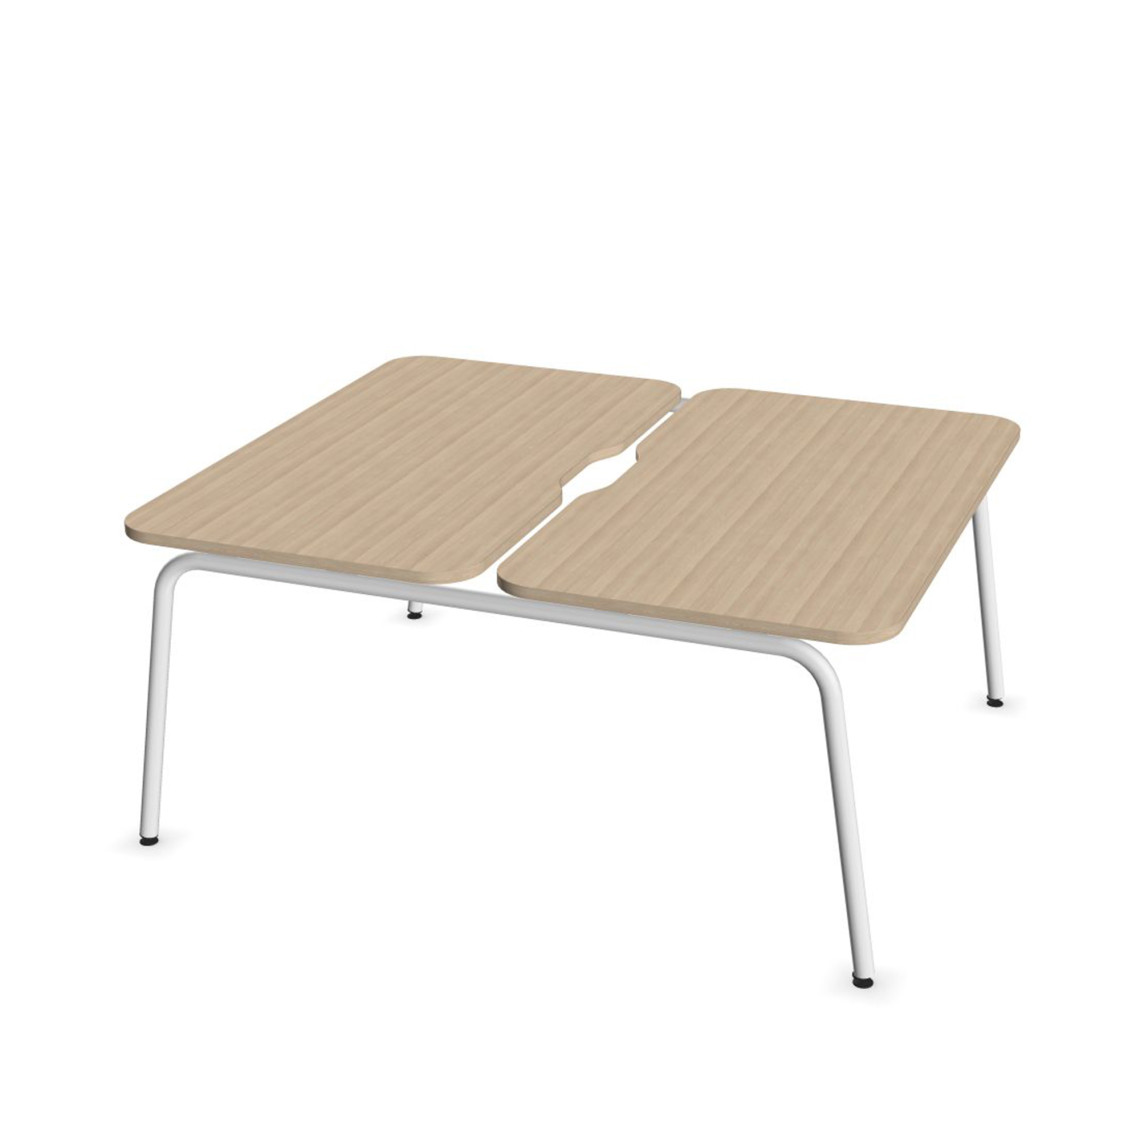 Dobbelt skrivebord Round, Design White / Sand Ash, Bredde 120 cm